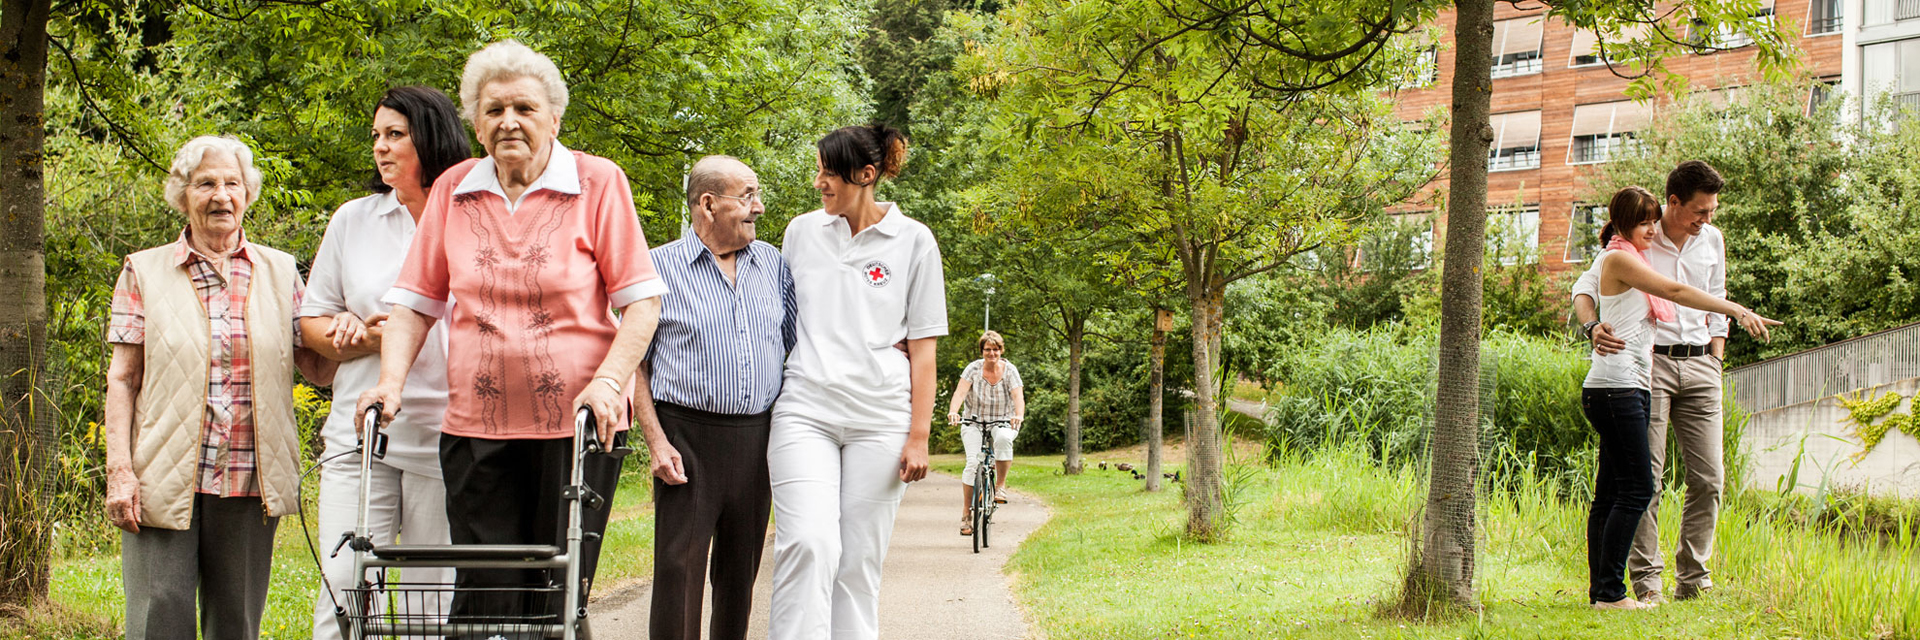 Senioren bei einem Spaziergang mit Betreuung